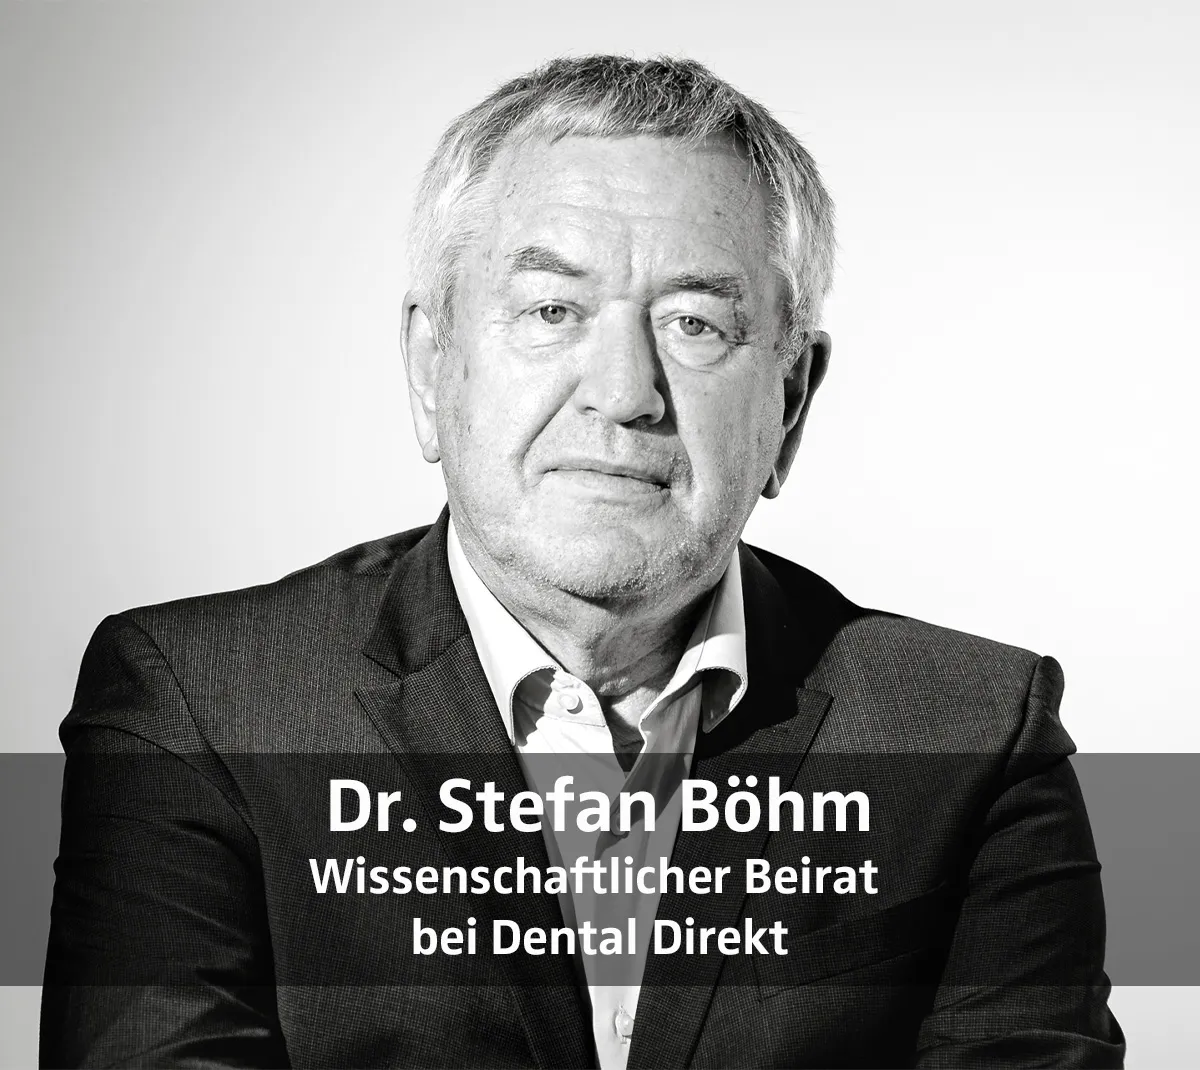 Dr. Stefan Böhm